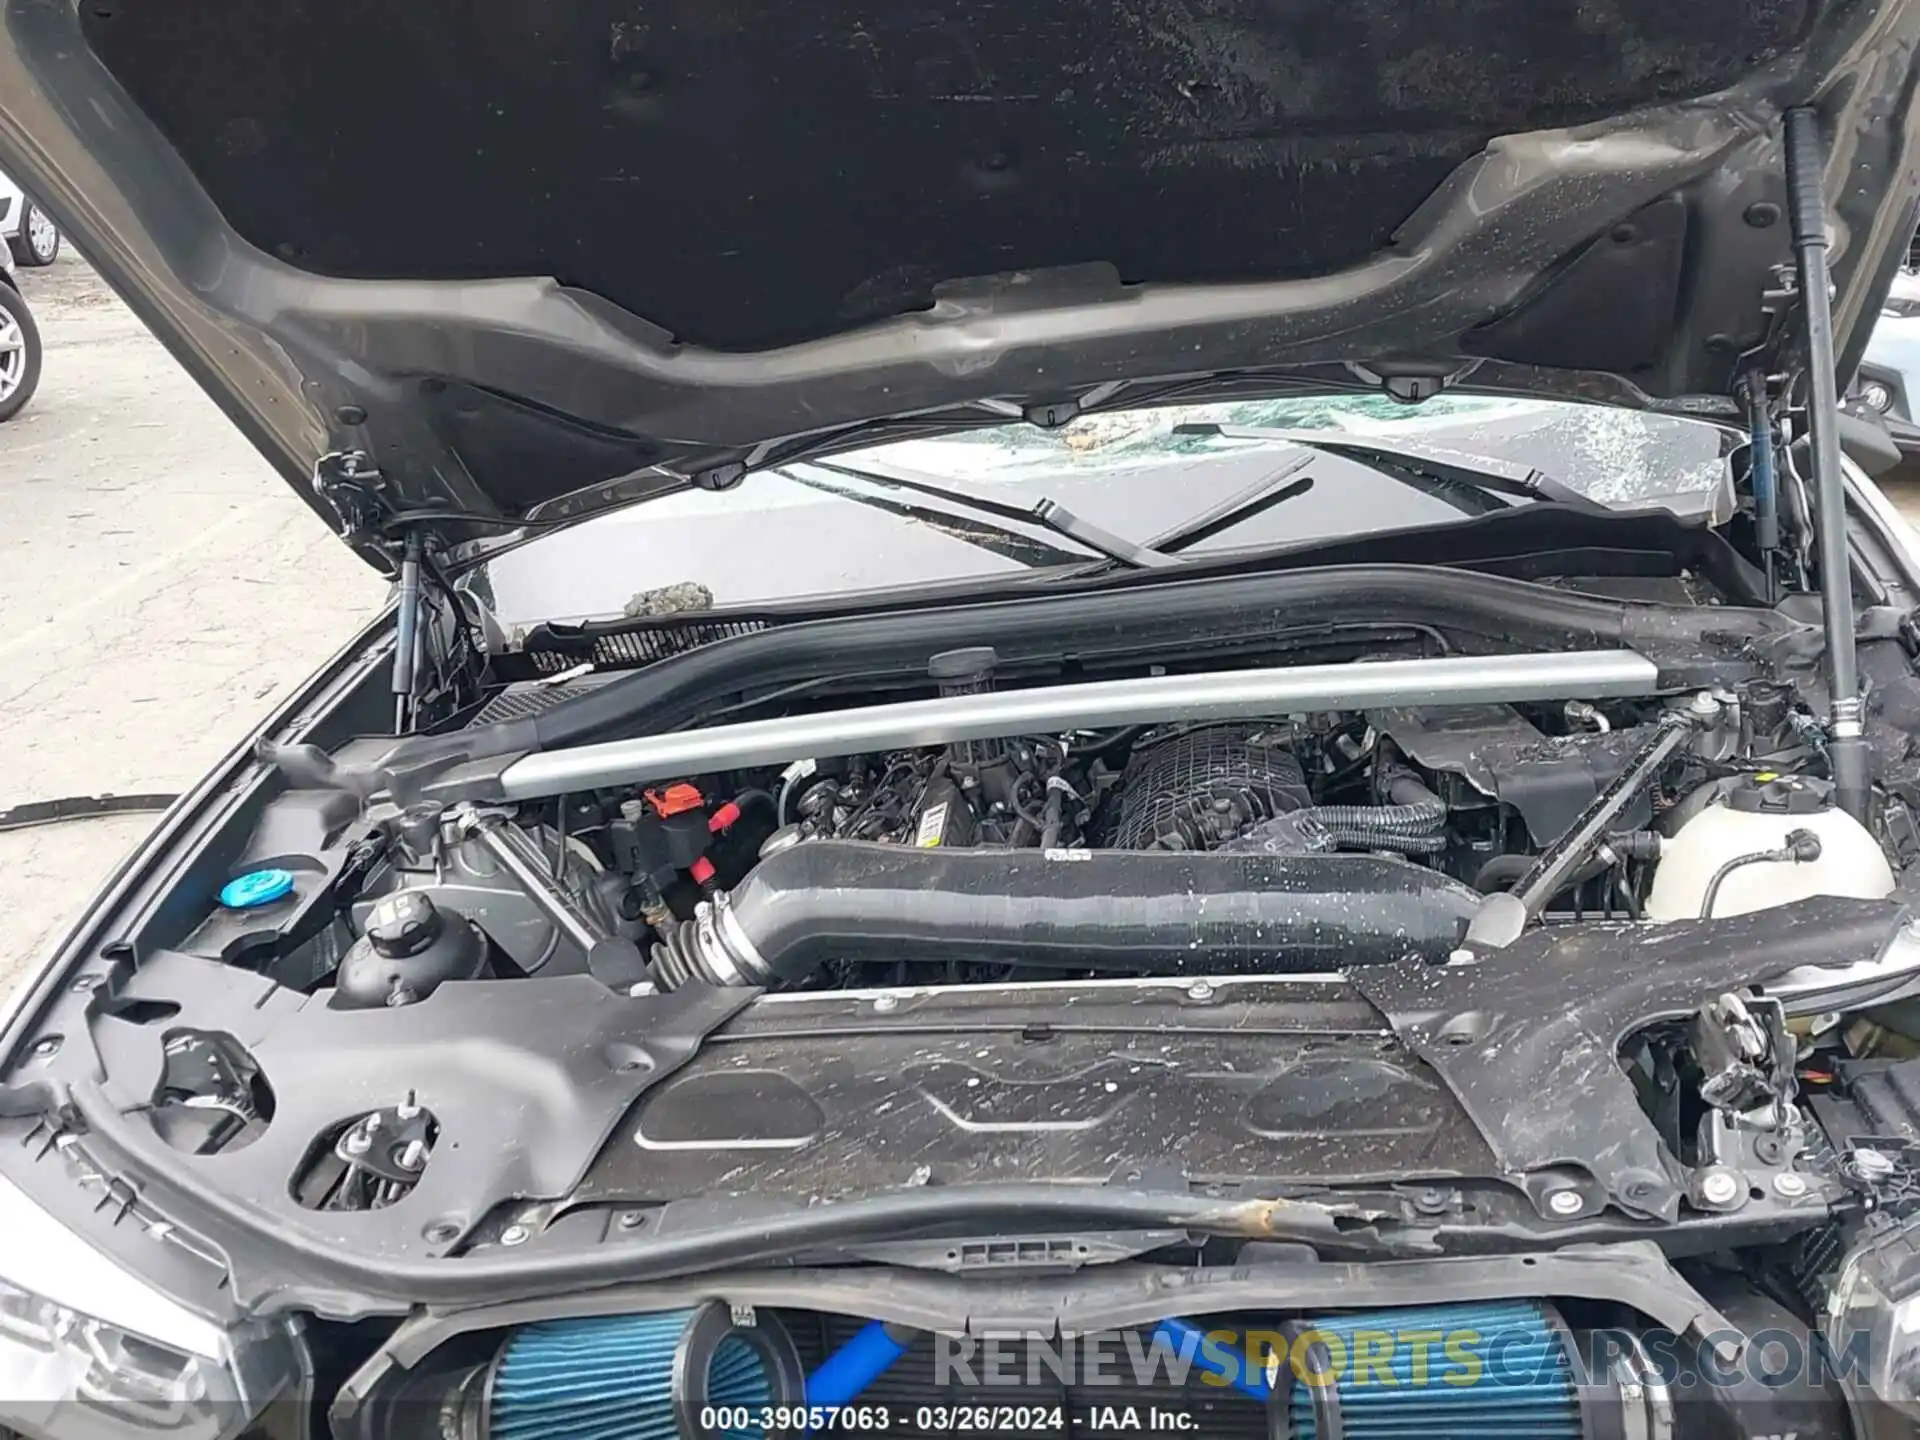 10 Photograph of a damaged car 5YMUJ0C02LLU67361 BMW X4 M 2020